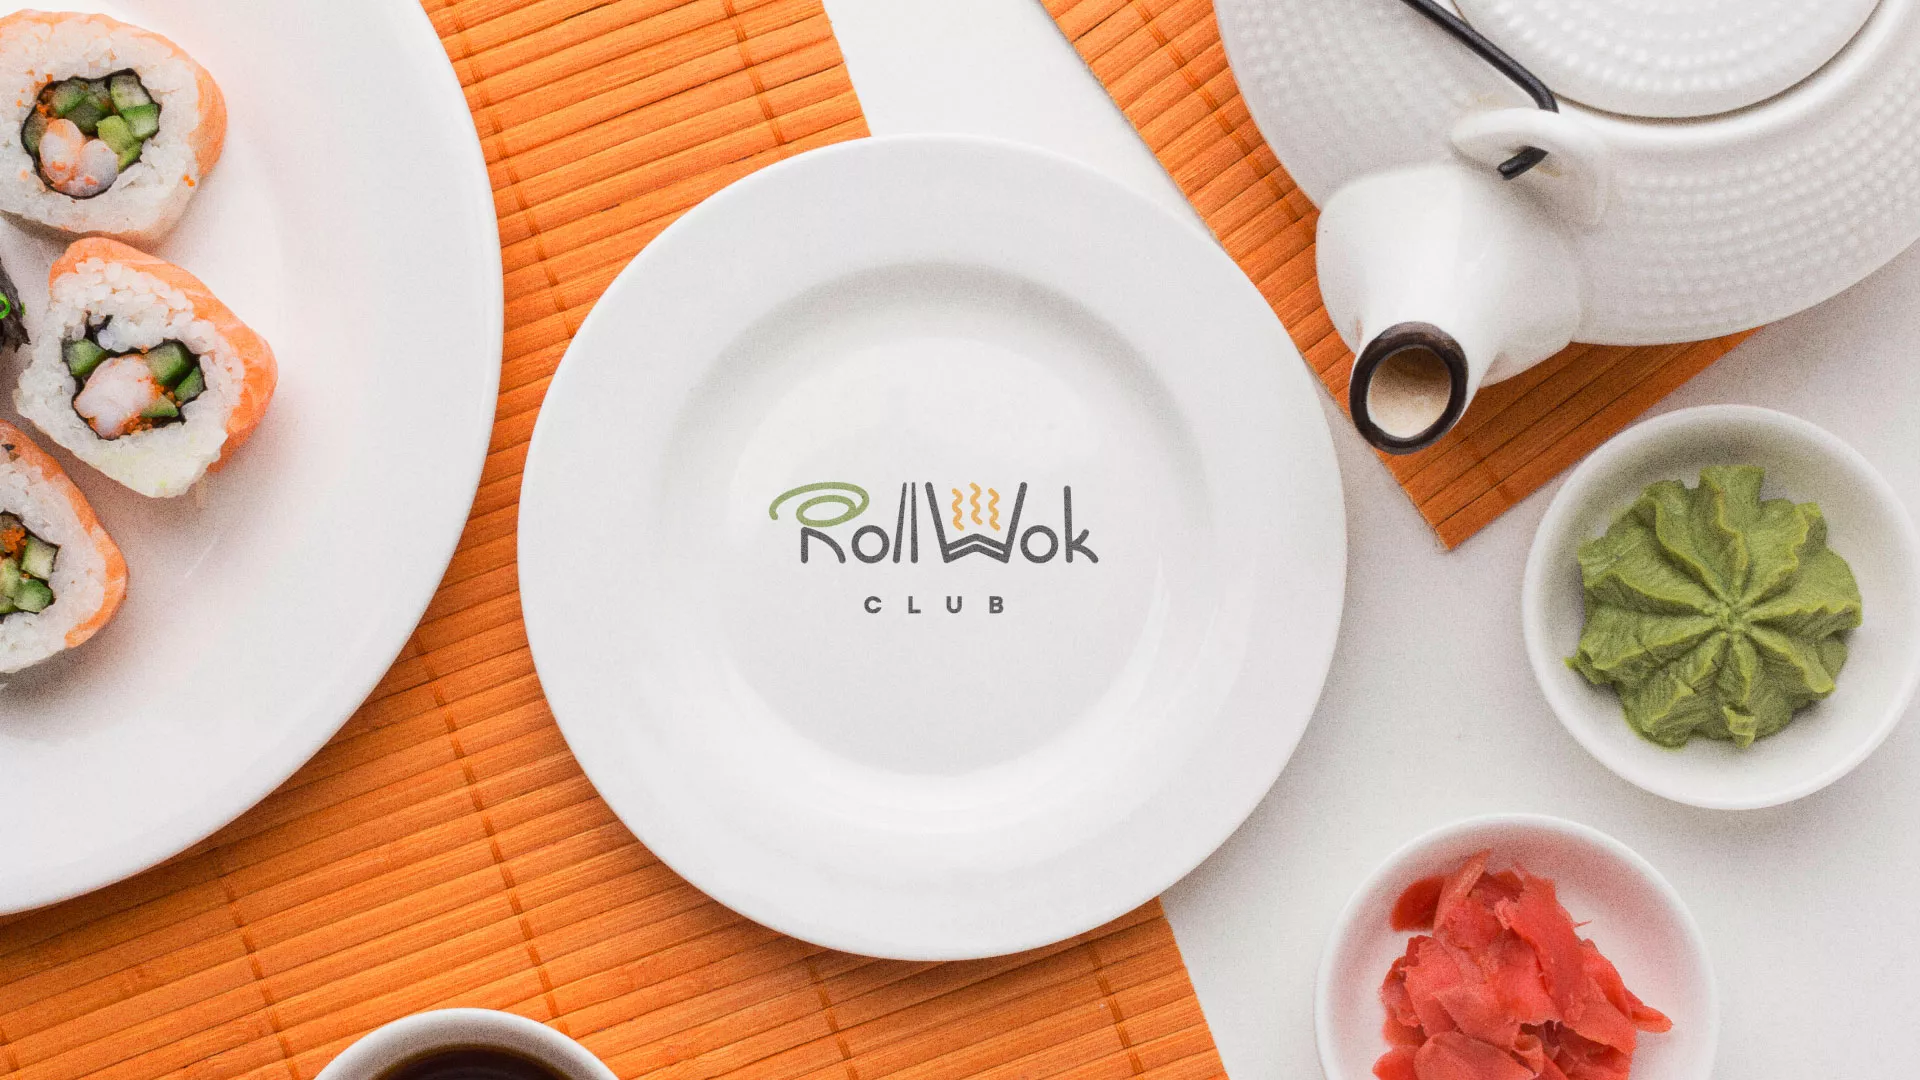 Разработка логотипа и фирменного стиля суши-бара «Roll Wok Club» в Салаире